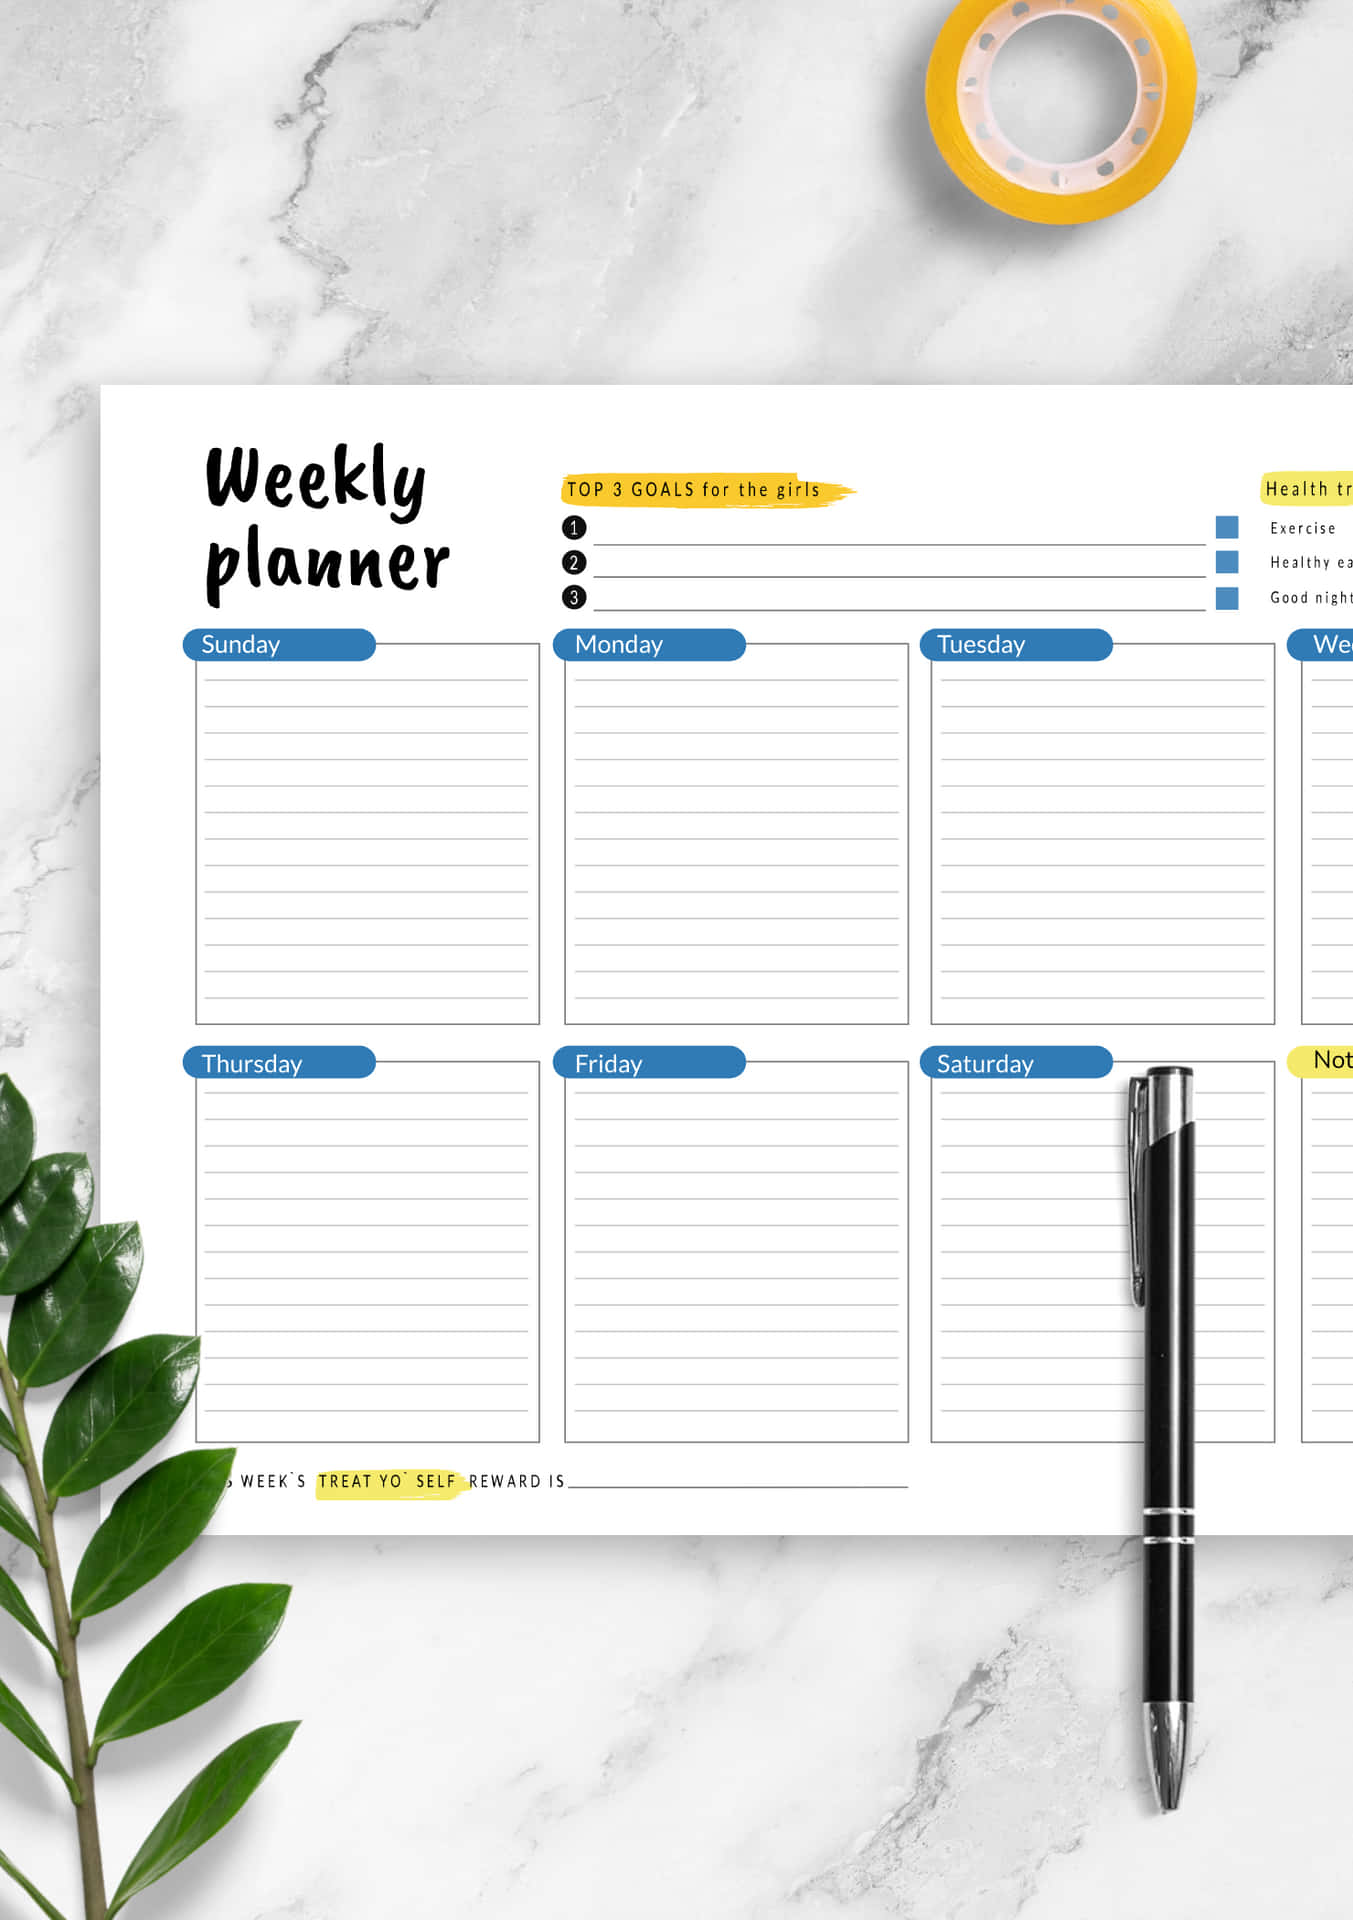 Weekly Planner Template - Free Printable